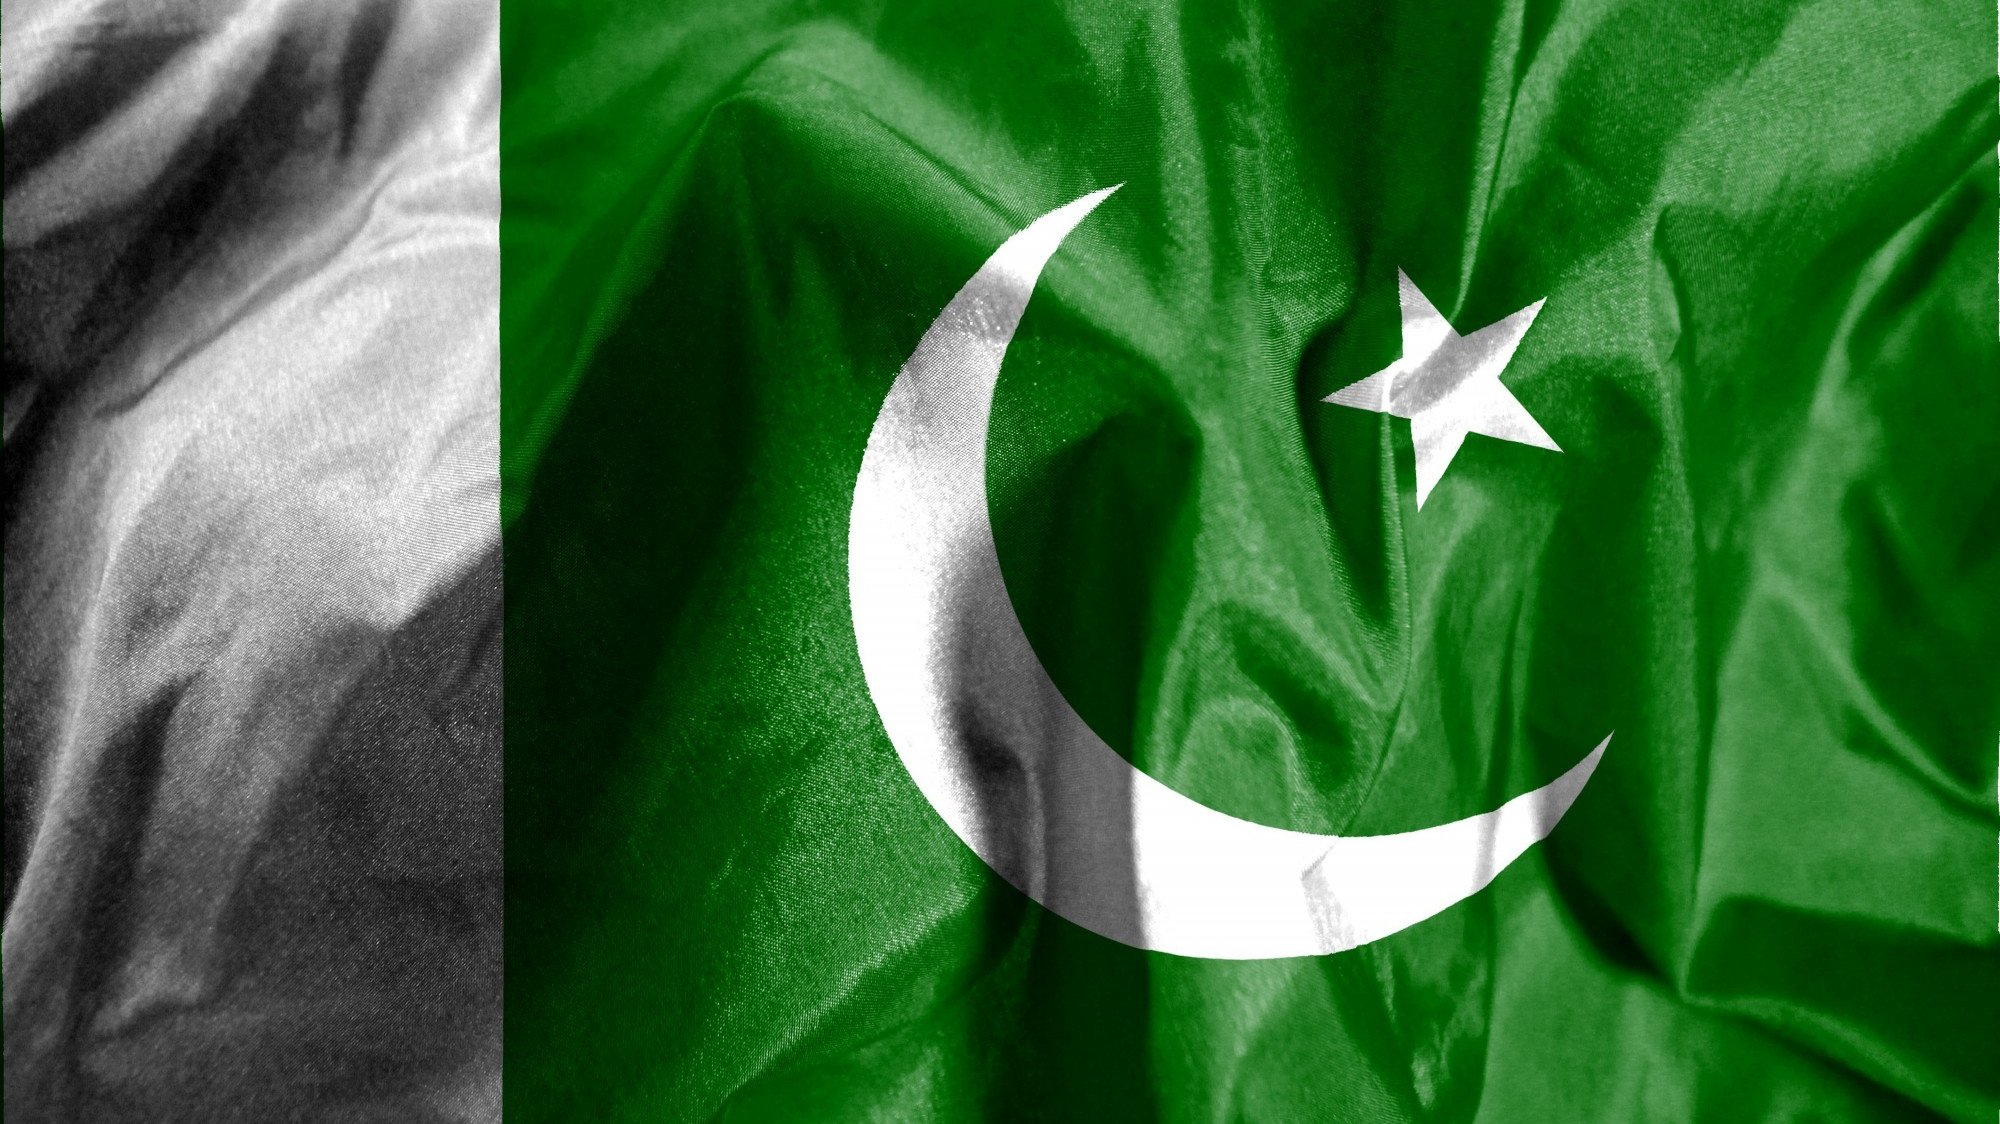 Umair Khan, diplomata do Paquistão, realçou que a missão diplomática está disponível para ajudar os cidadãos paquistaneses em Portugal